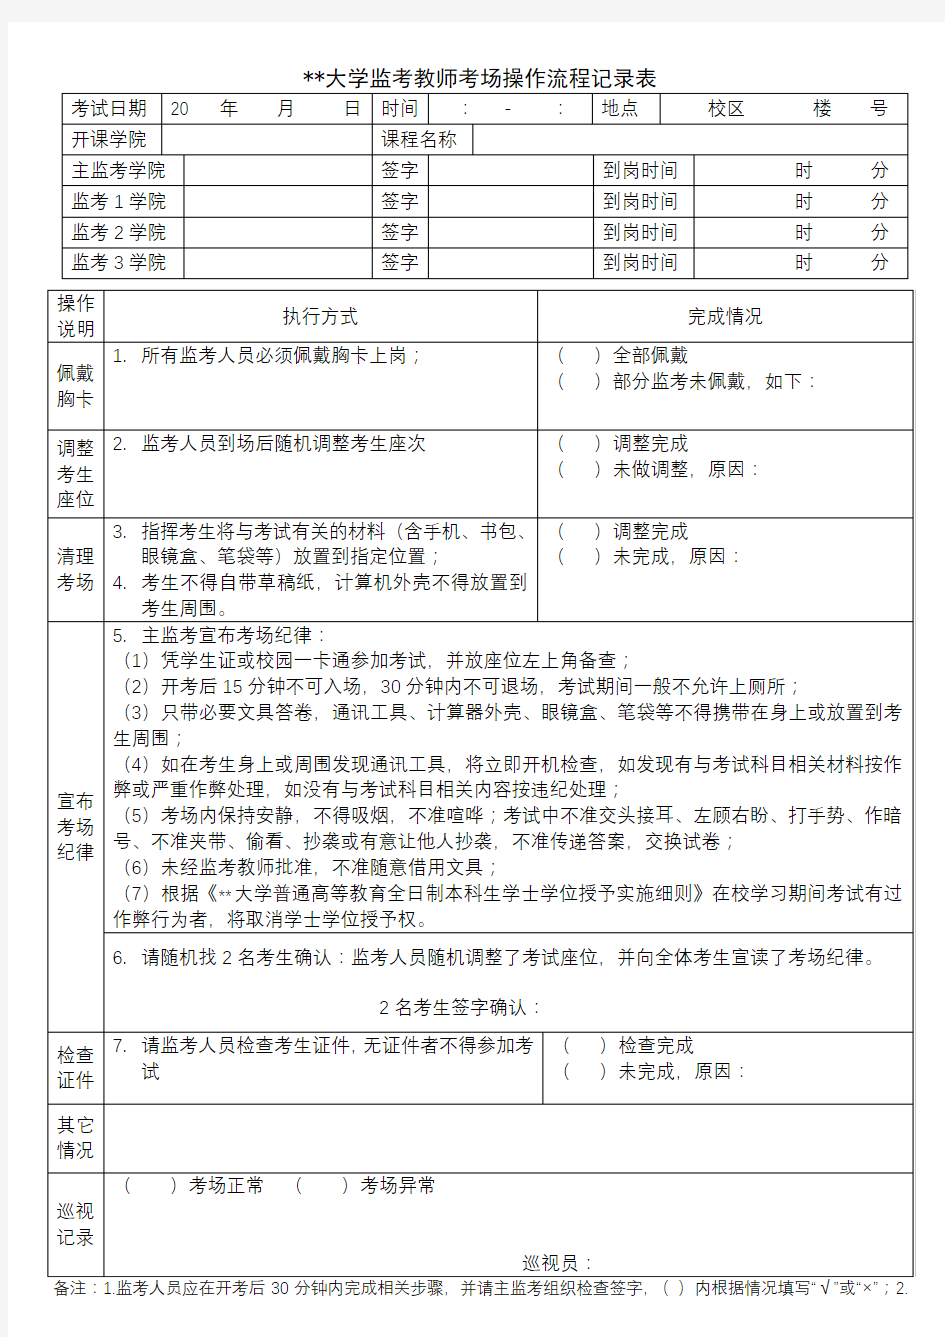 河北科技大学监考教师考场操作流程记录表【模板】